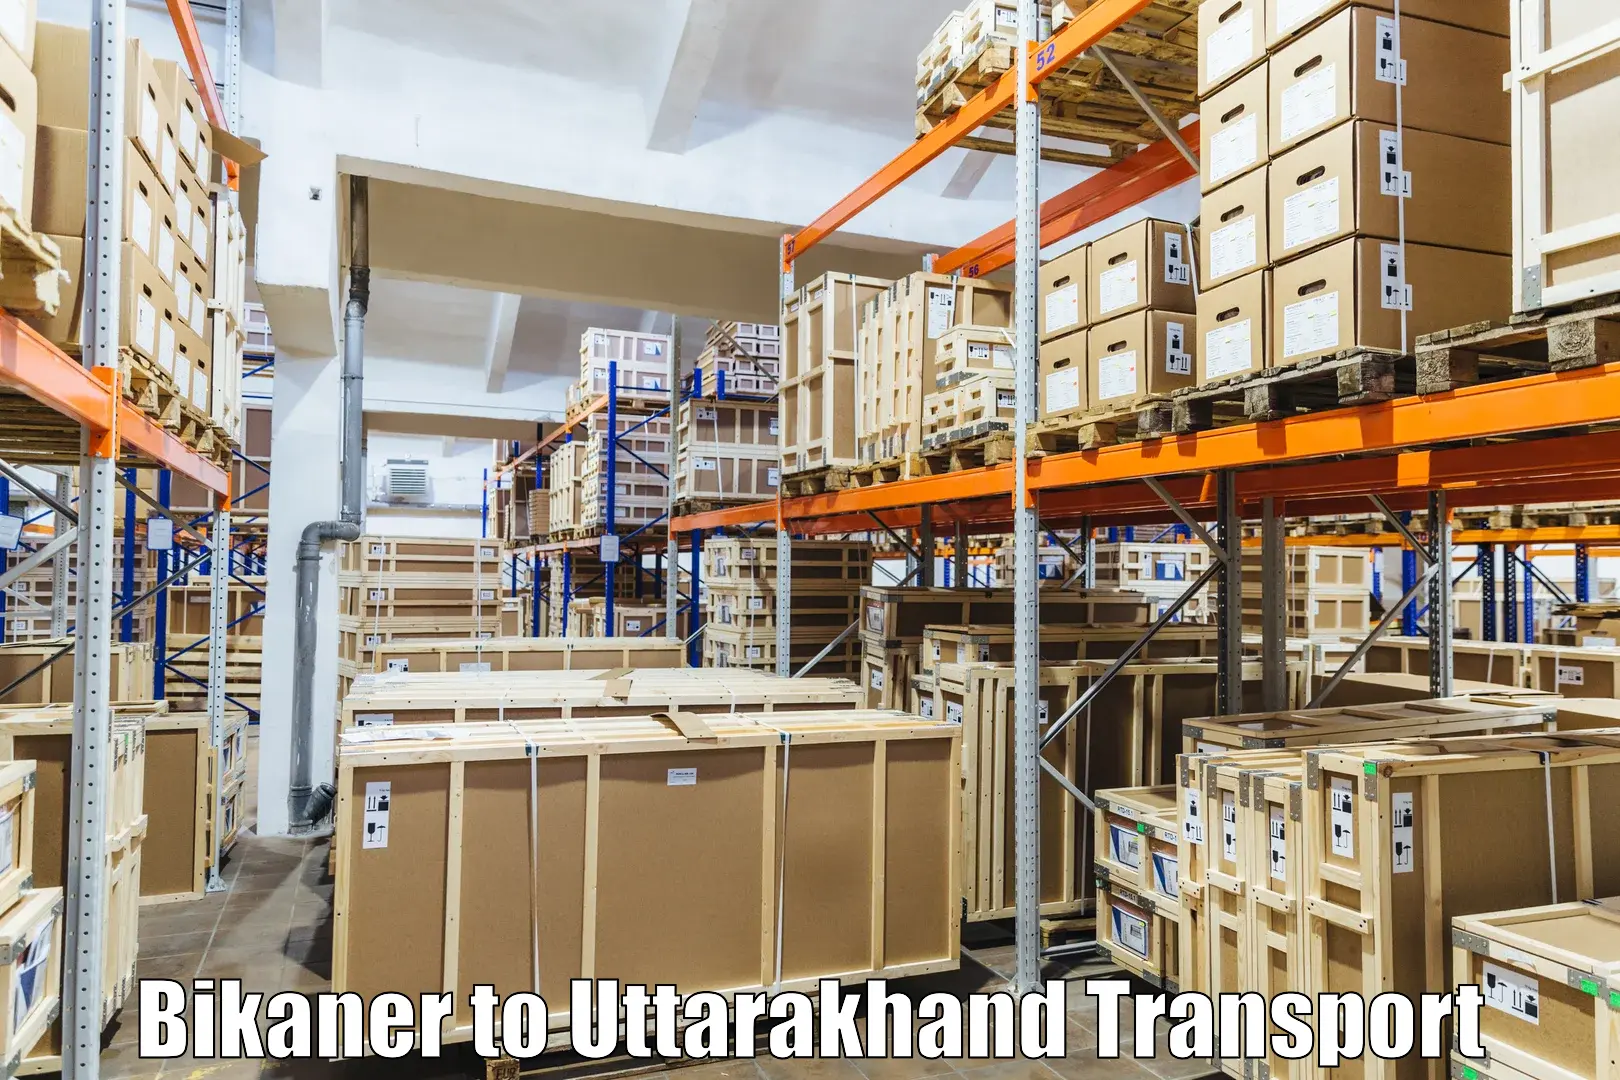 Interstate transport services Bikaner to Uttarakhand